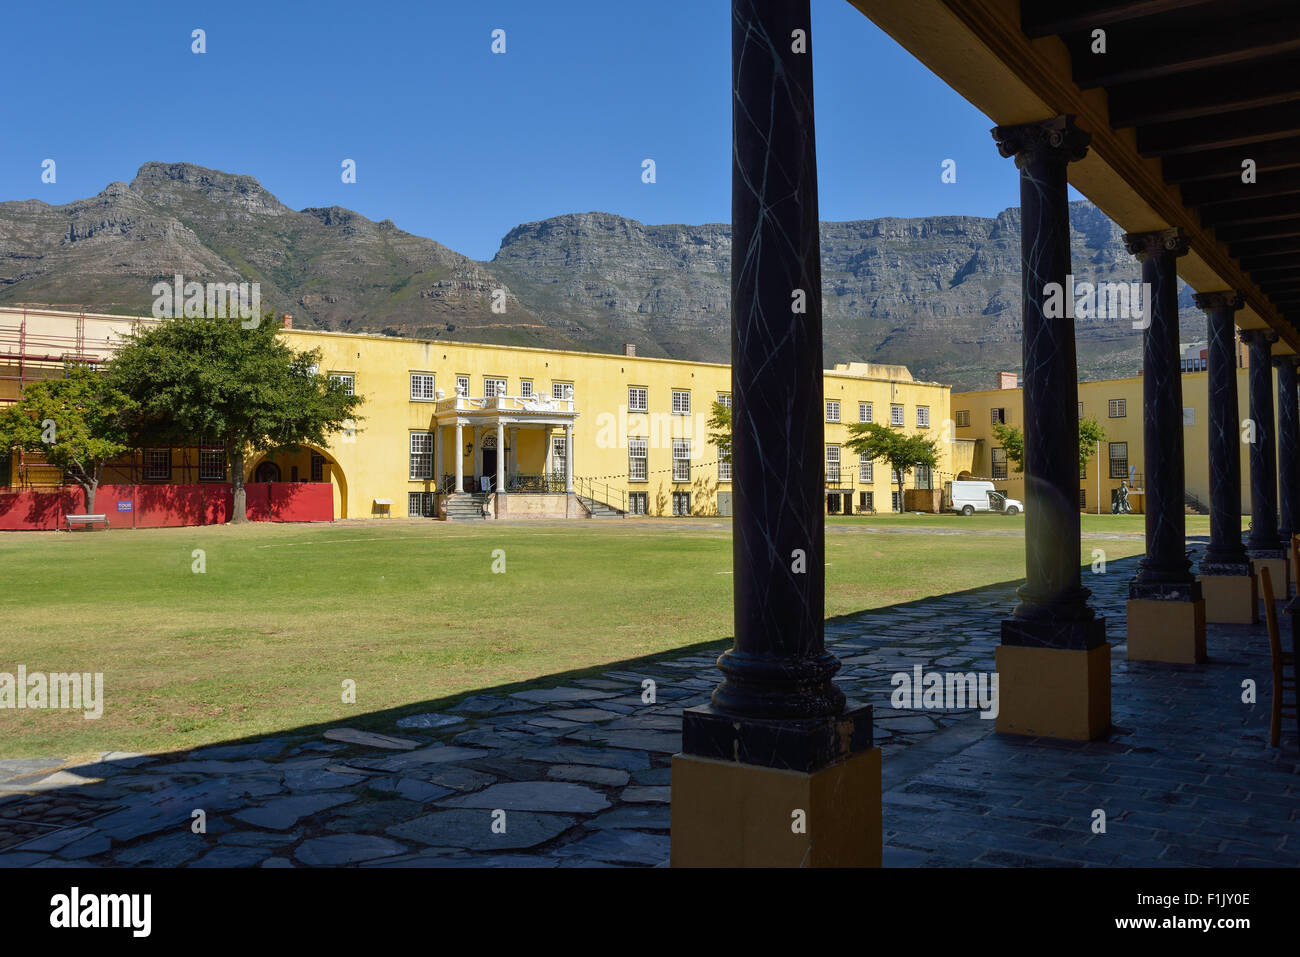 Blocco F, il Castello di Buona Speranza (Kasteel die Goeie Hoop), Buitenkant Street, Città del Capo, Provincia del Capo Occidentale, Sud Africa Foto Stock